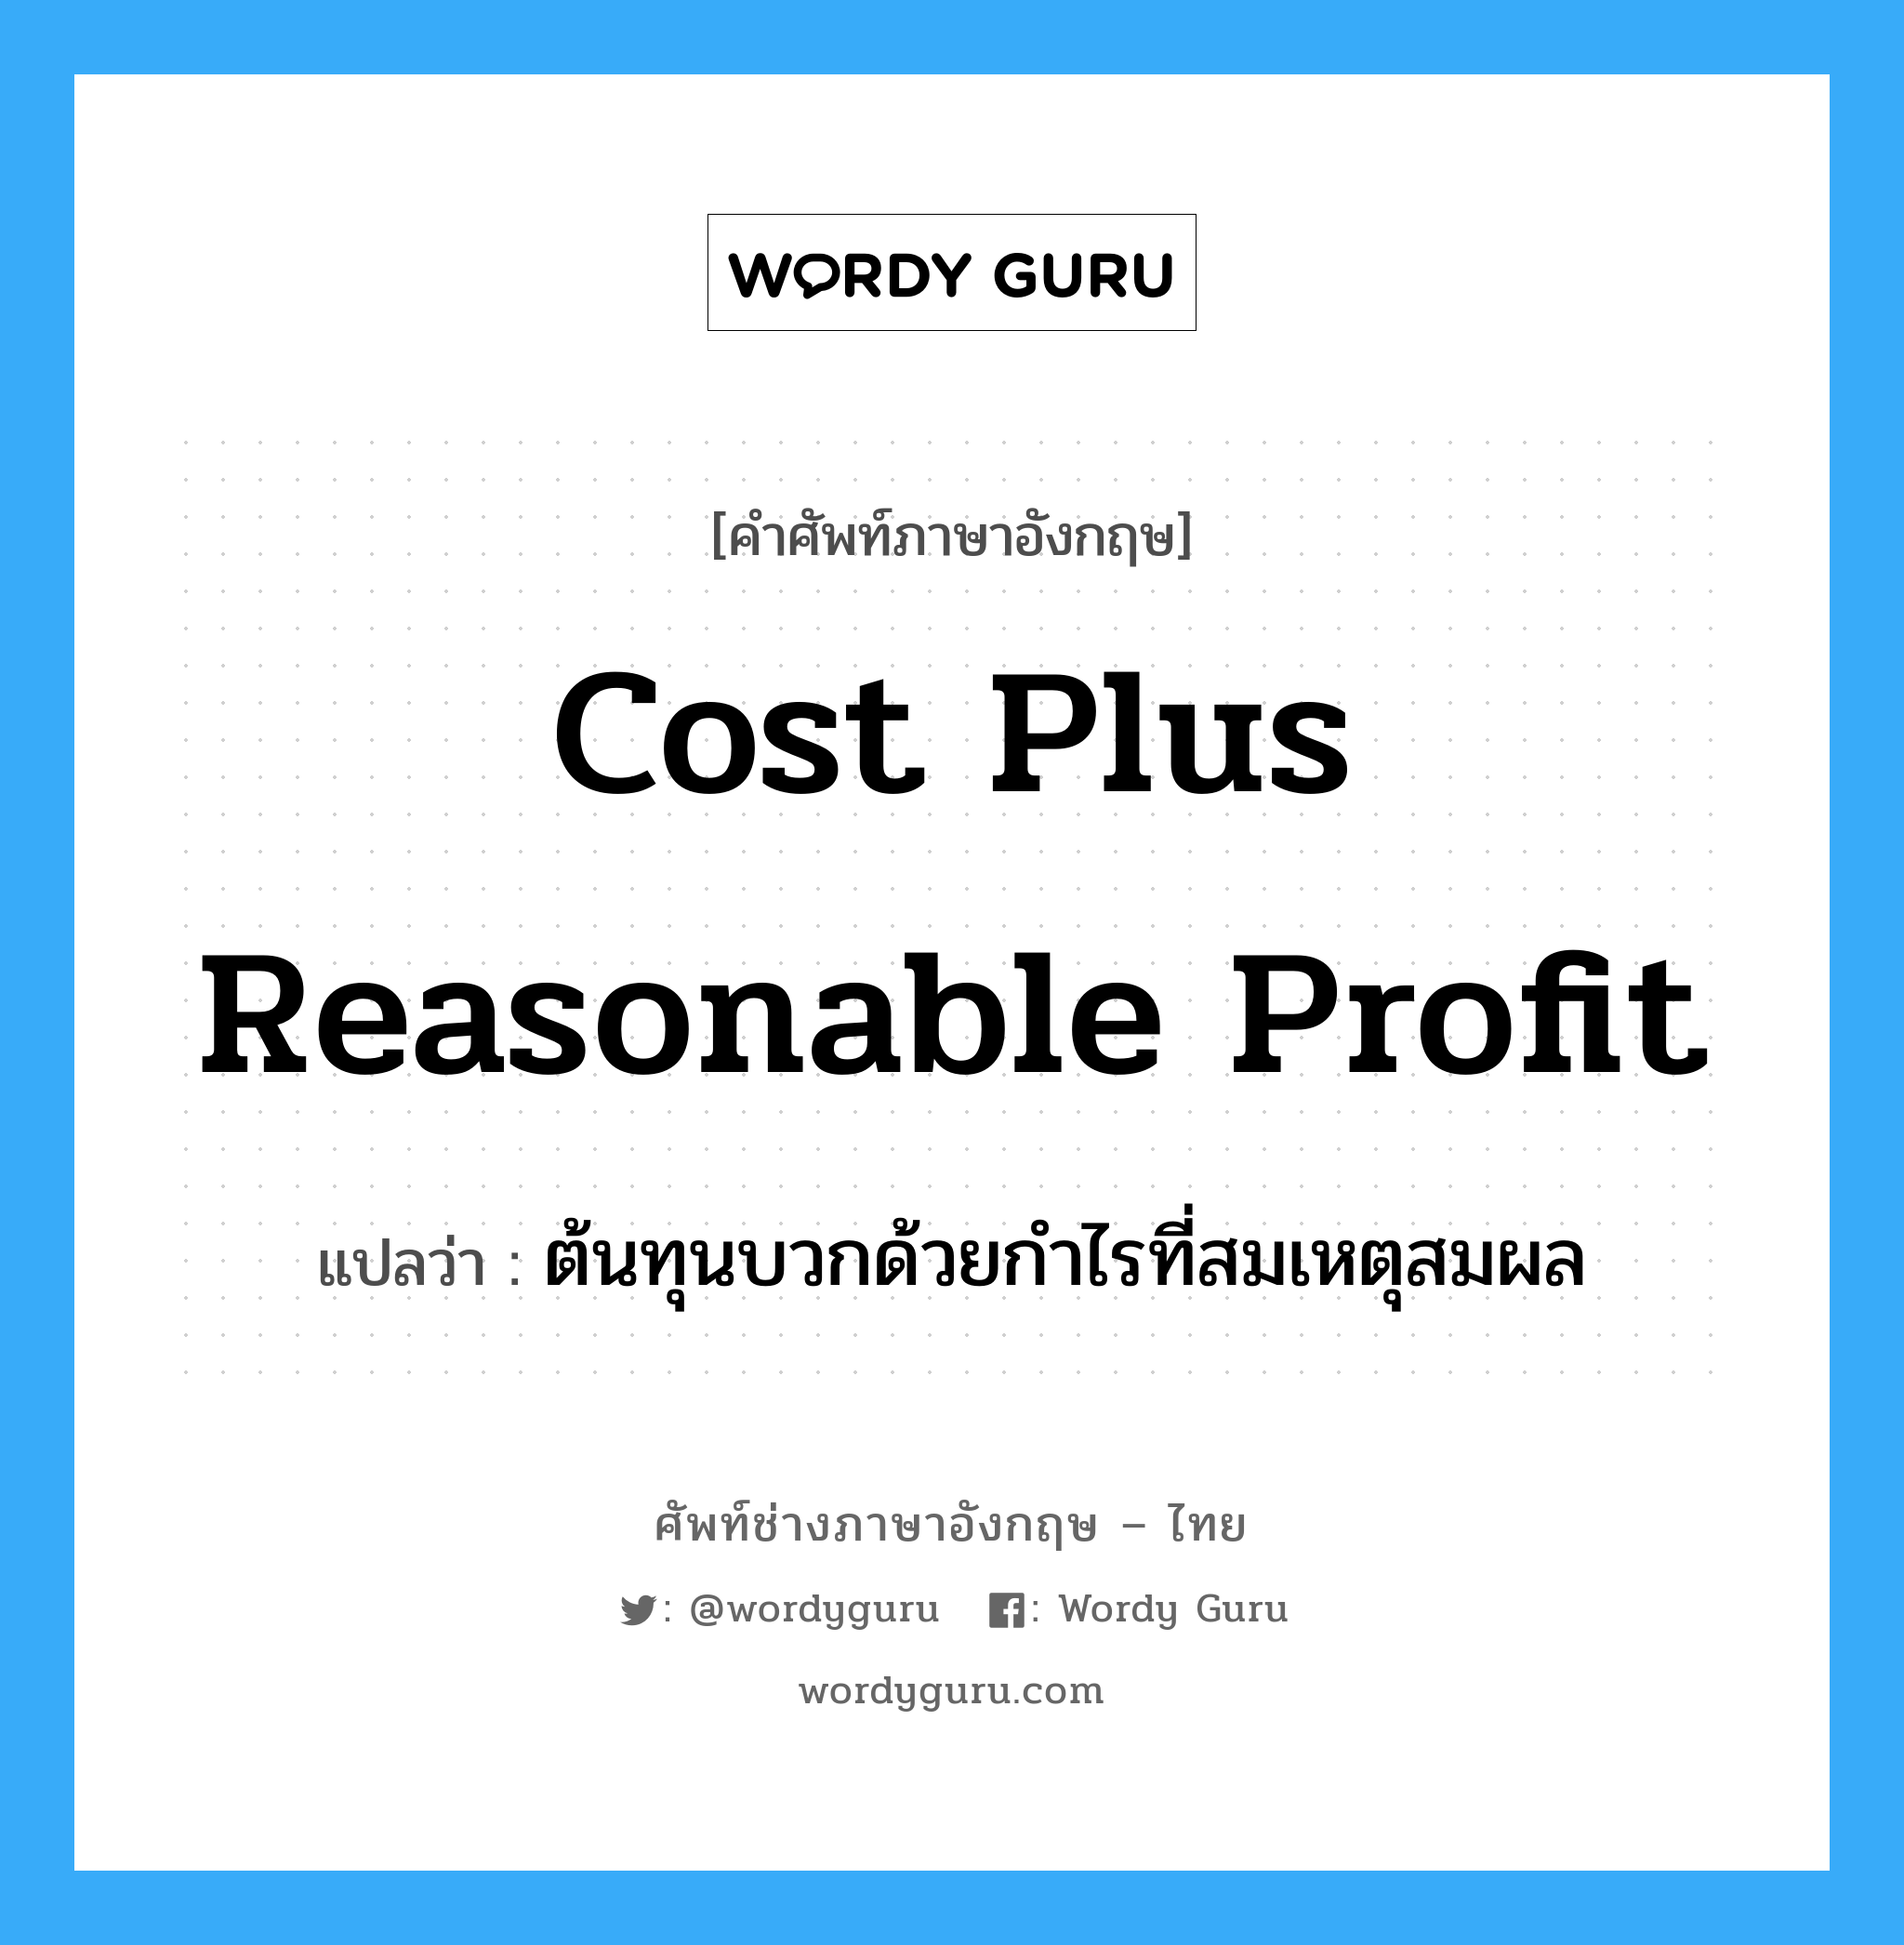 cost plus reasonable profit แปลว่า?, คำศัพท์ช่างภาษาอังกฤษ - ไทย cost plus reasonable profit คำศัพท์ภาษาอังกฤษ cost plus reasonable profit แปลว่า ต้นทุนบวกด้วยกำไรที่สมเหตุสมผล